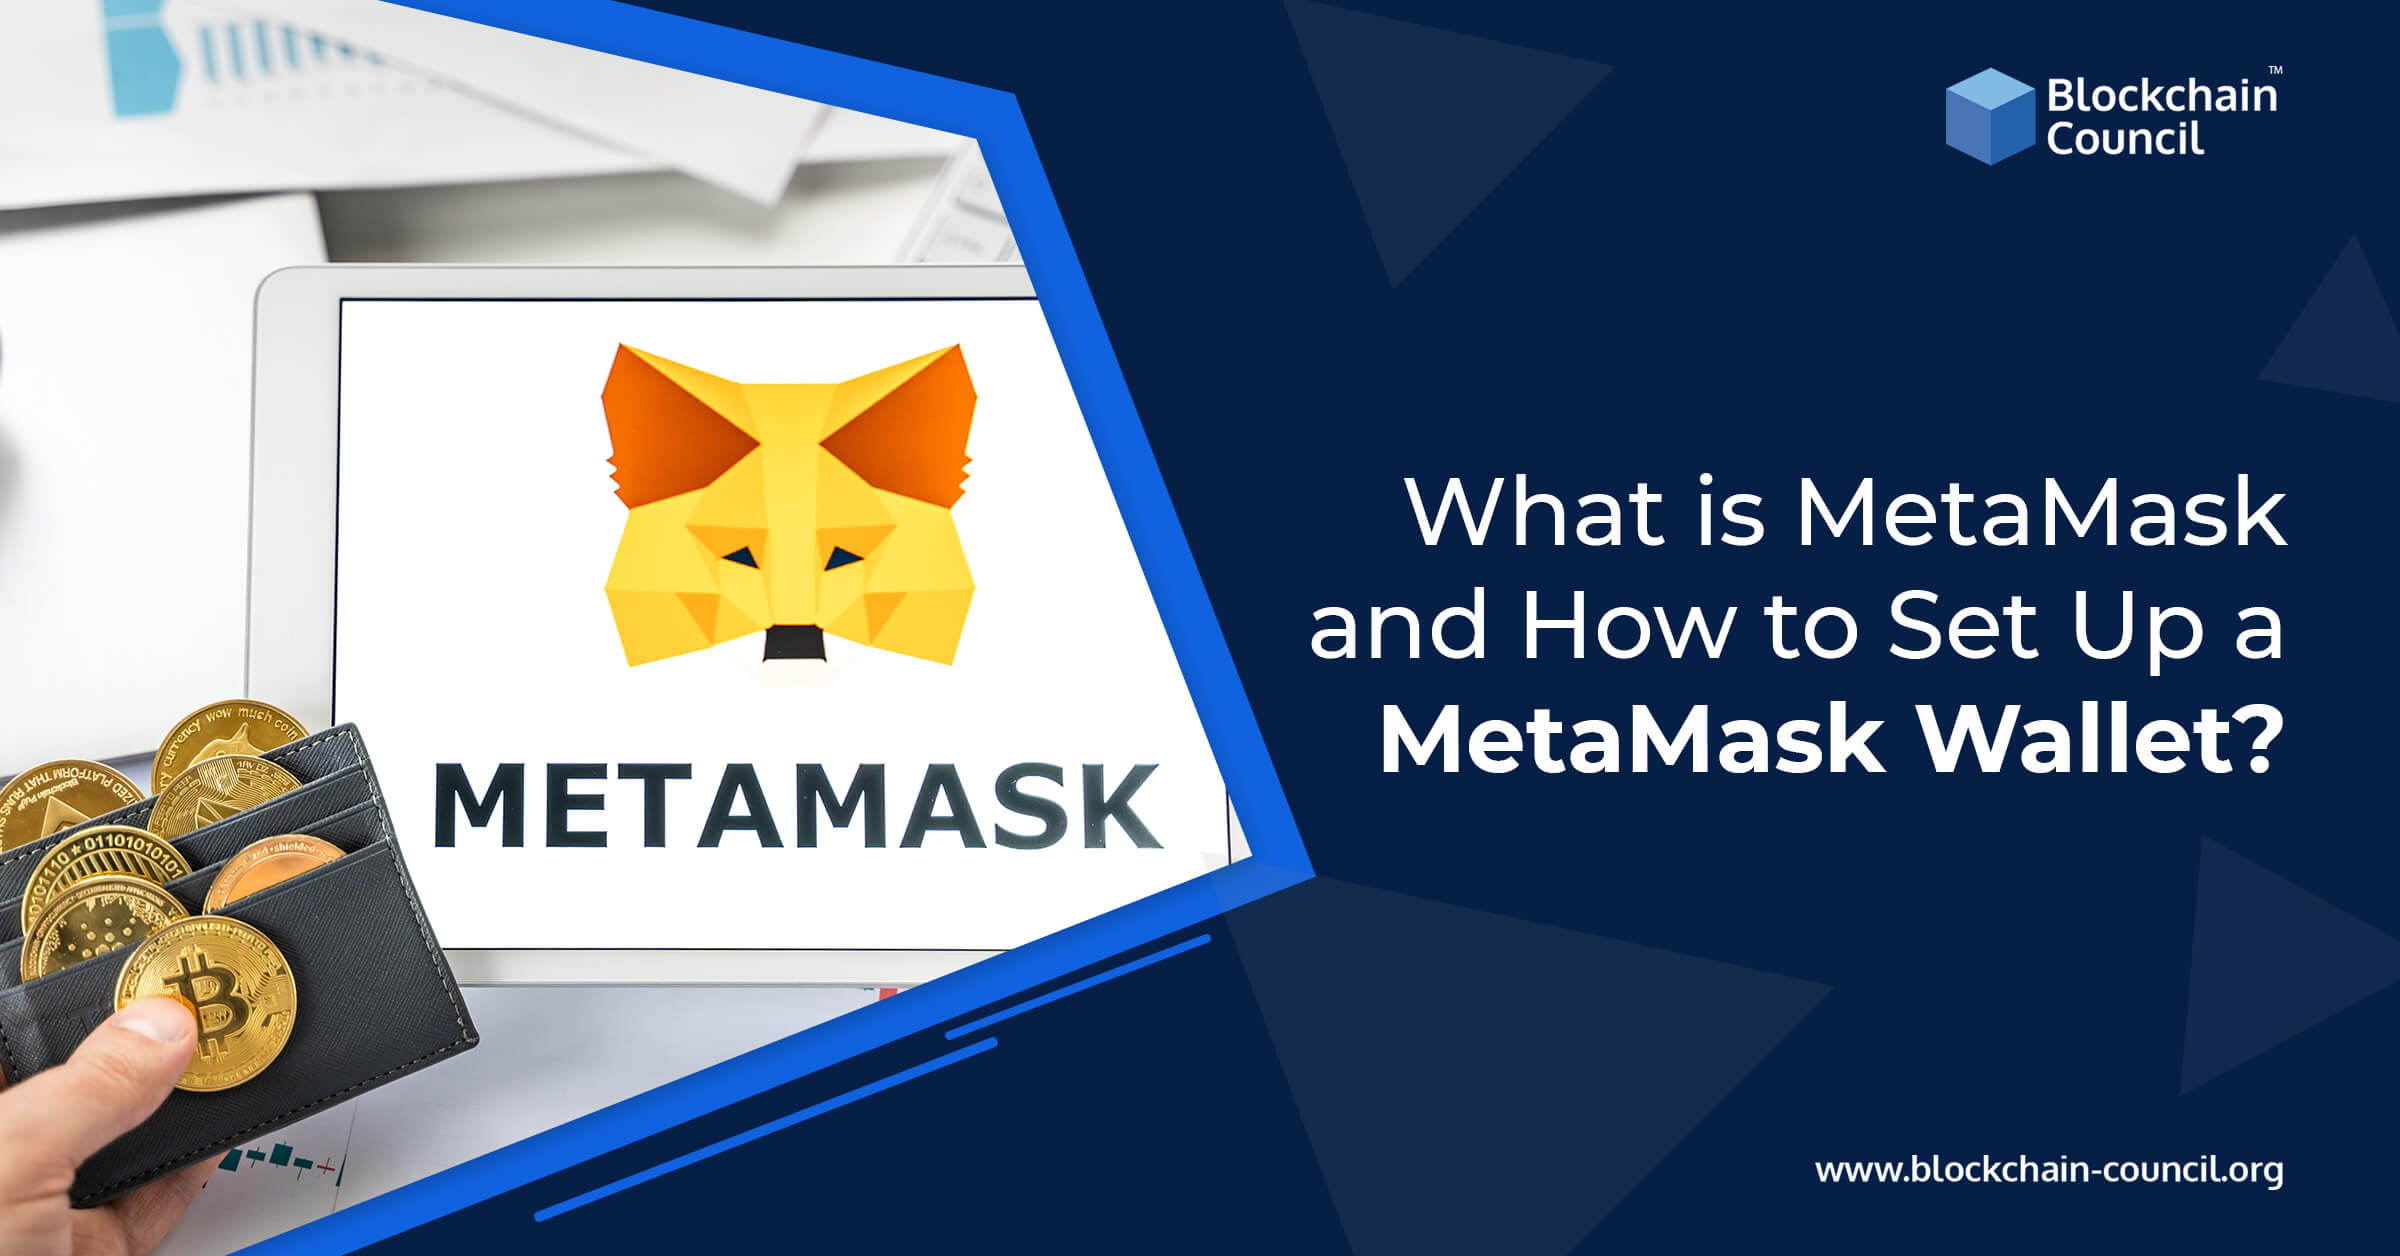 metamask meaning